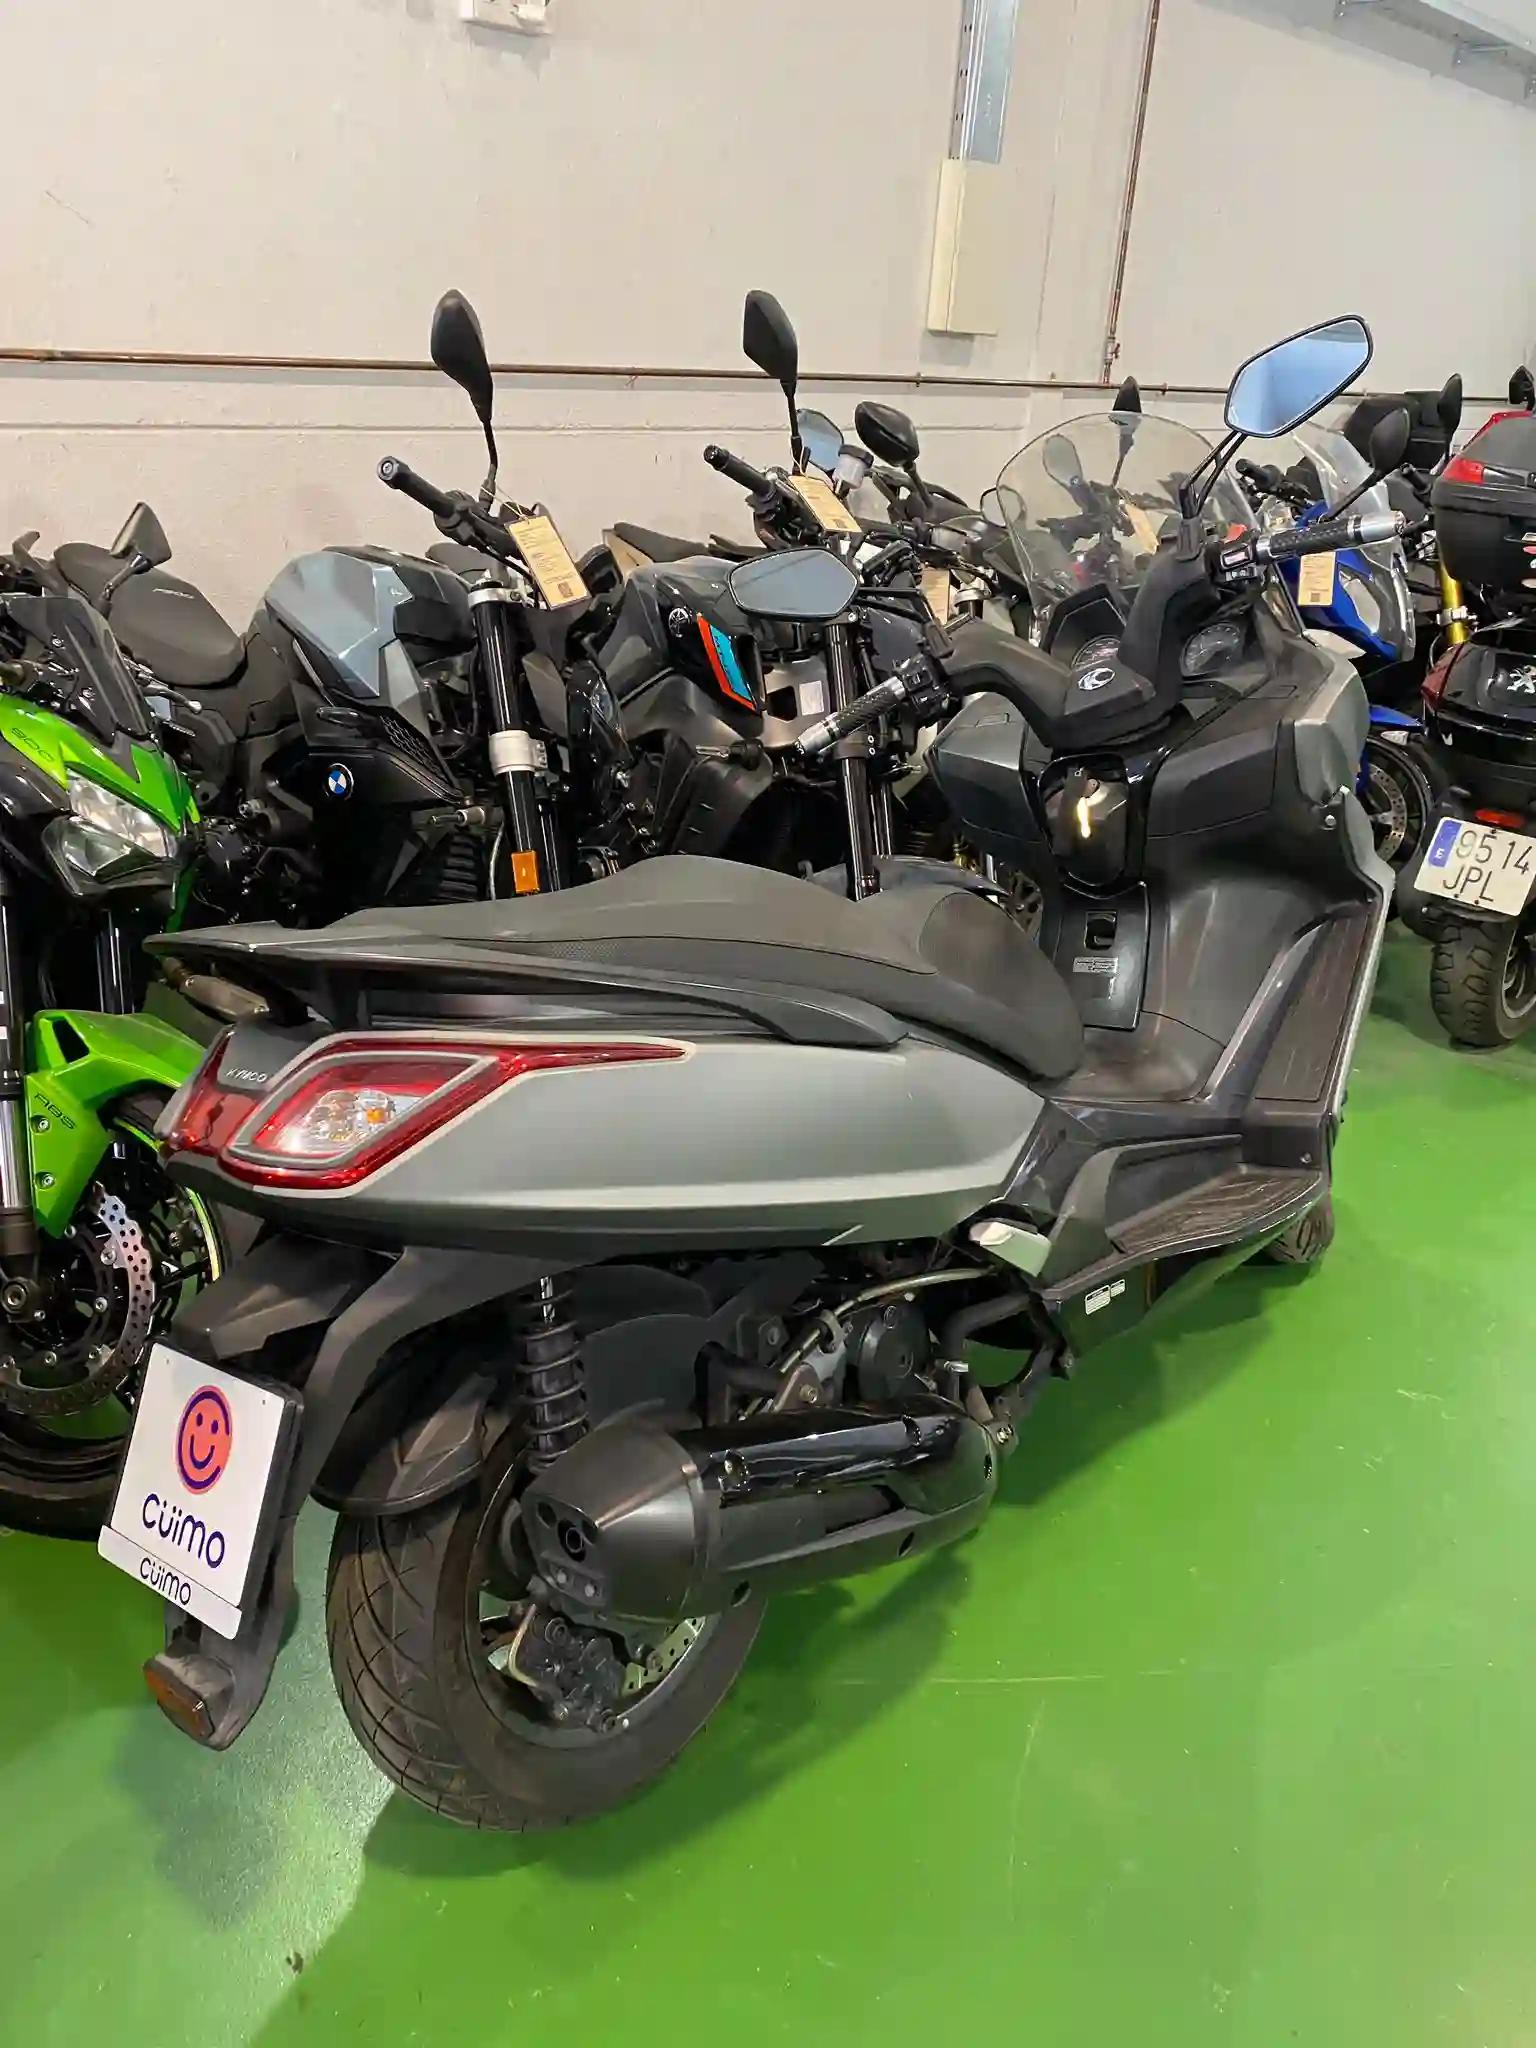 Moto KYMCO SUPER DINK 125 ABS de seguna mano del año 2019 en Madrid